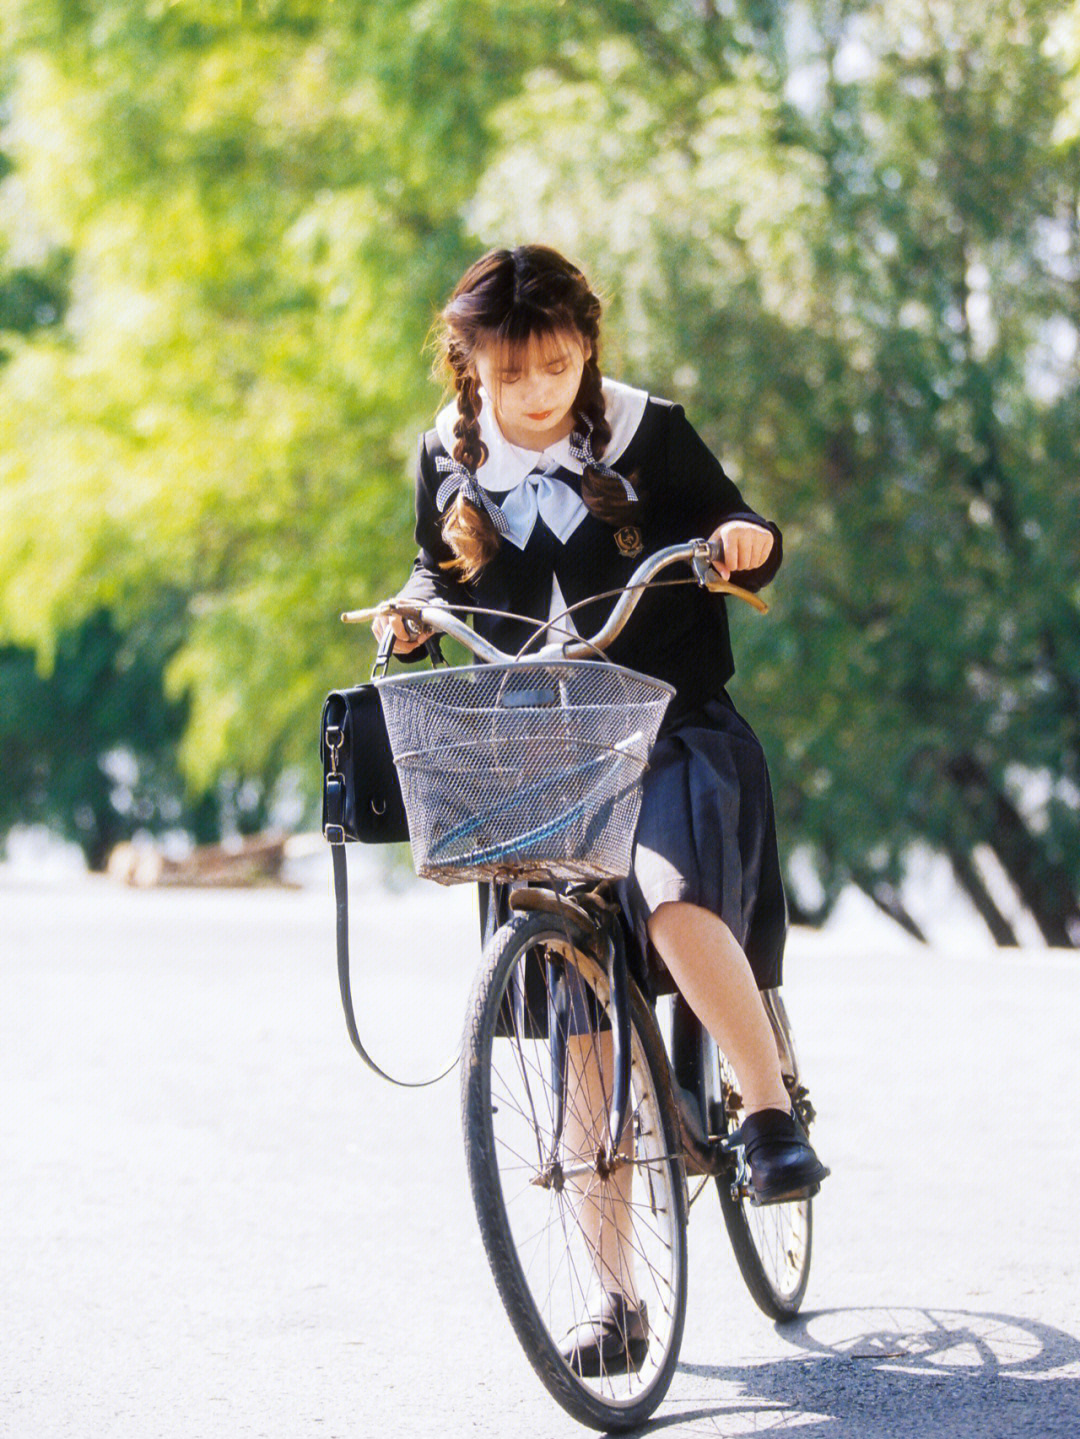 又拍了我最爱的制服写真,秋日的街边推着自行车的女孩,日剧氛围感拉满